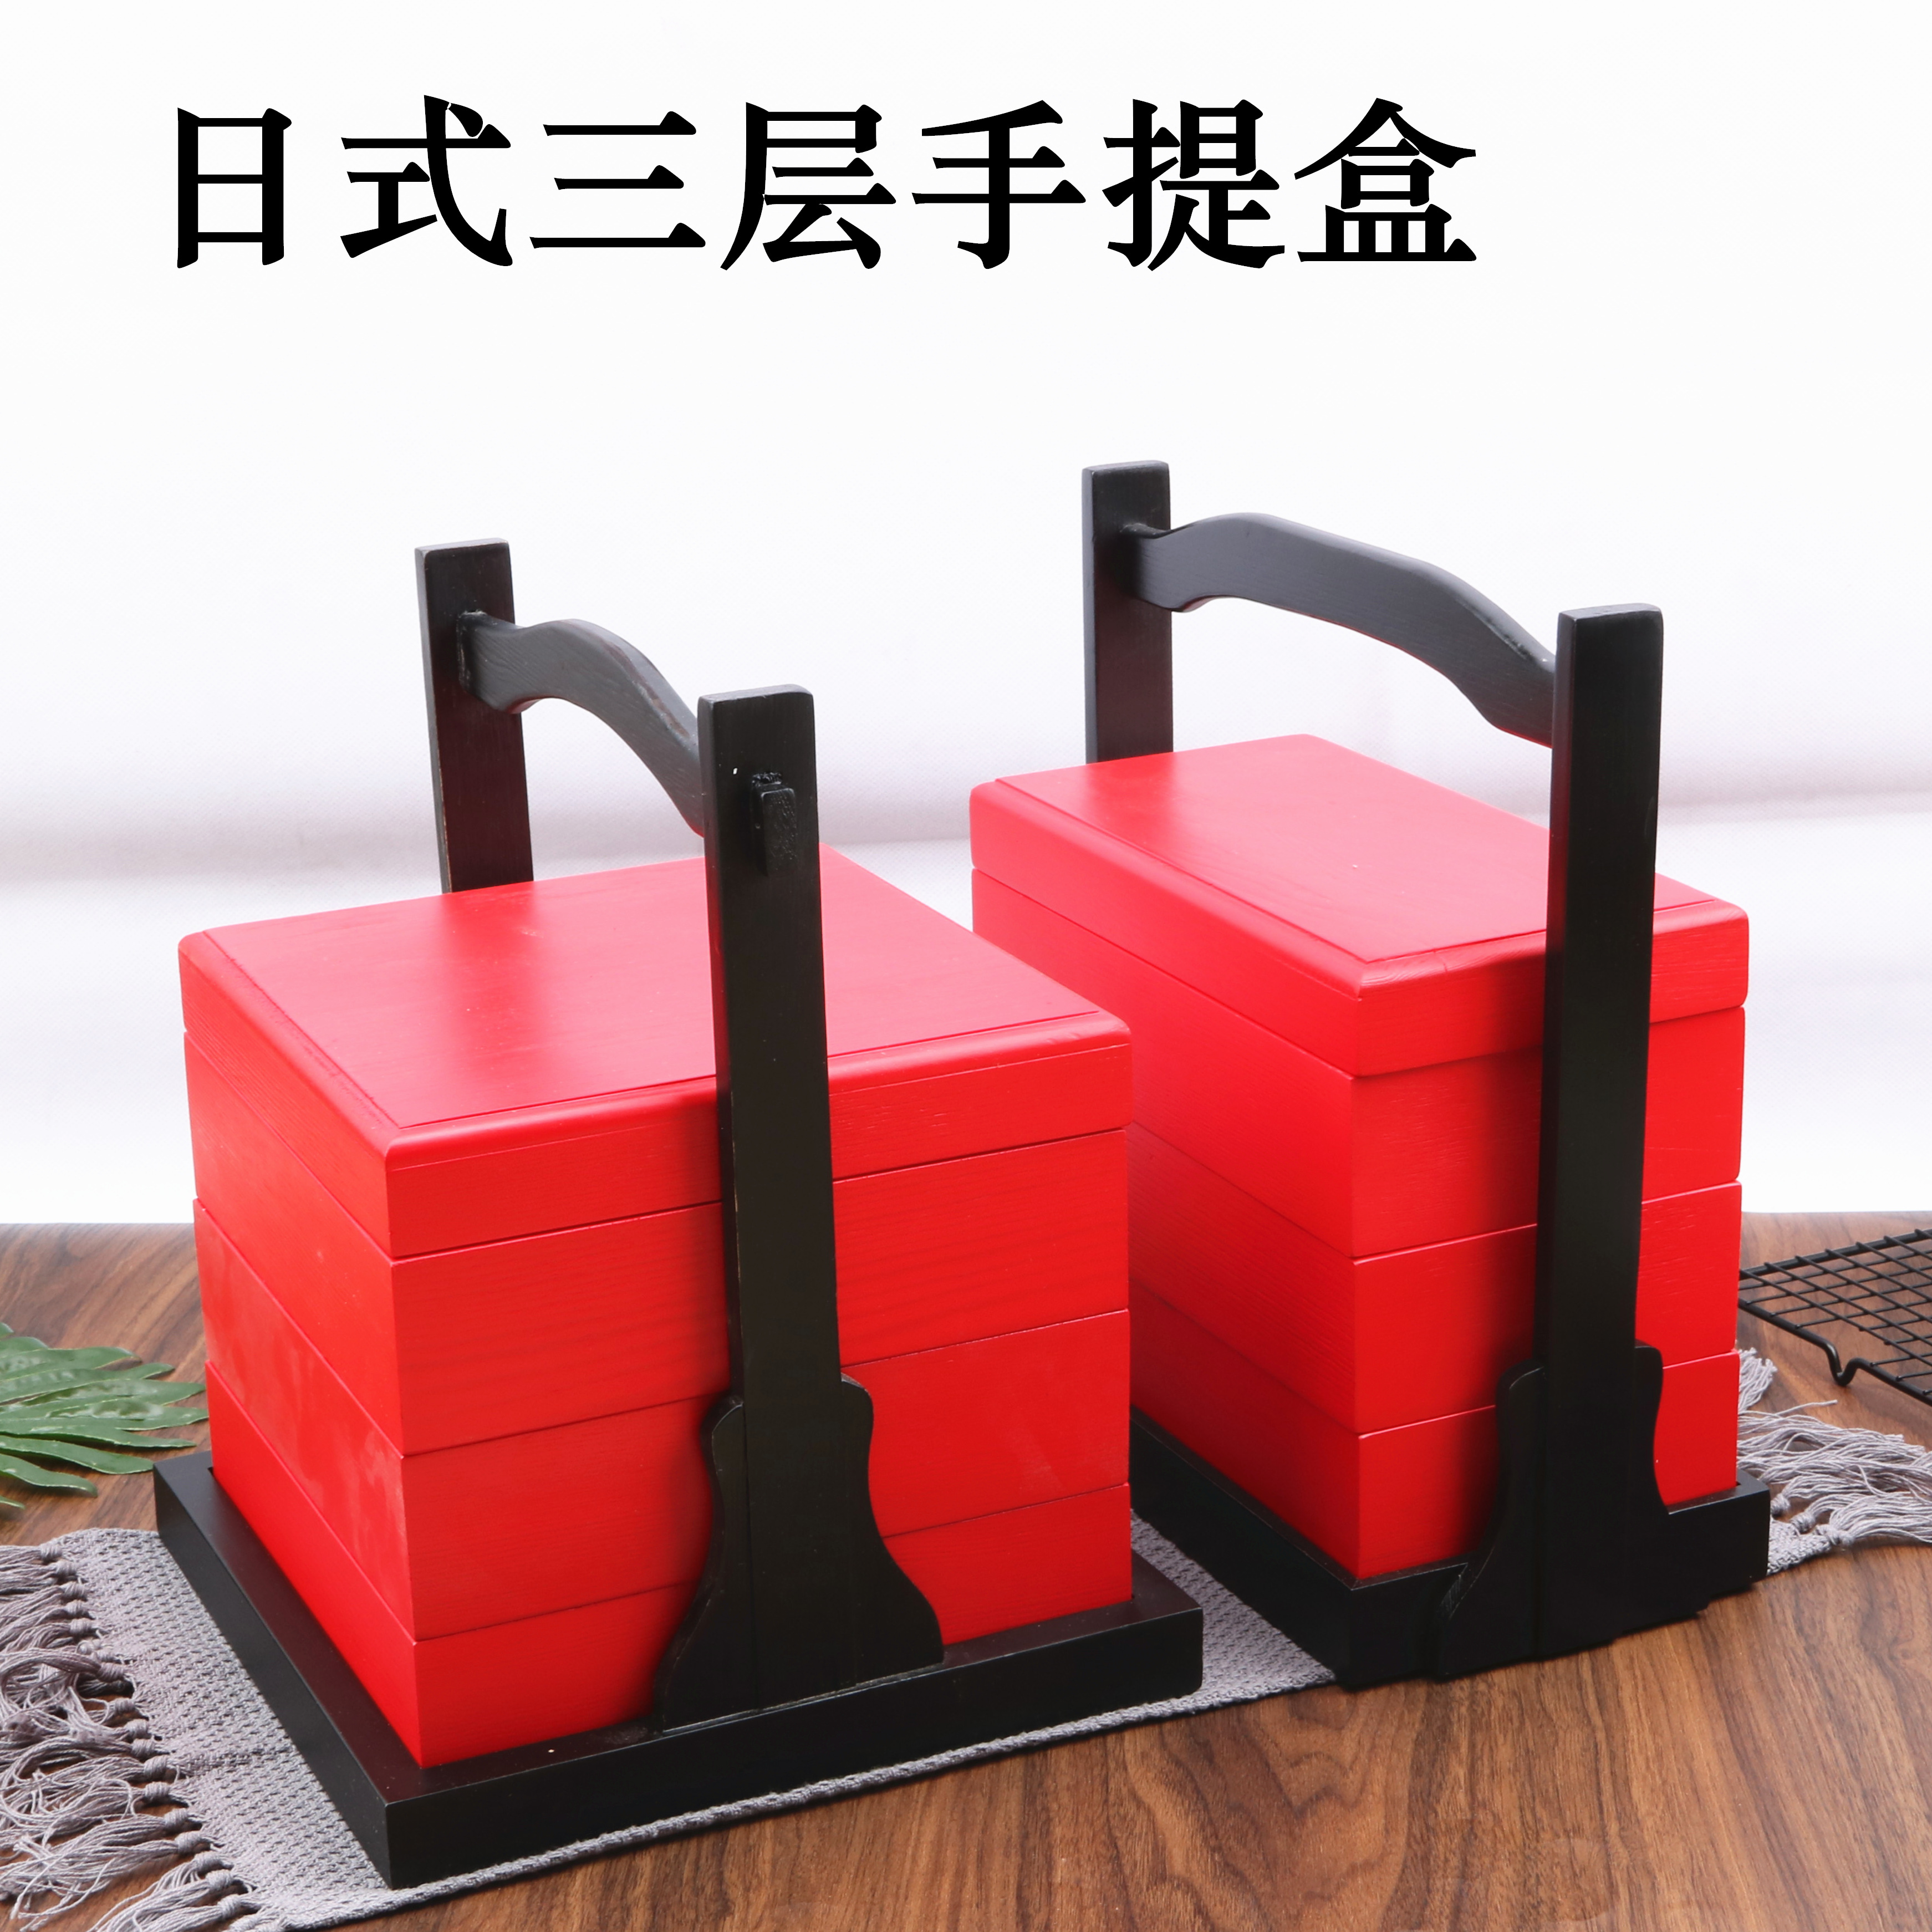 新品红色手提木盒三层寿司盒正方长方红色木盒刺身盒餐盒木质制造